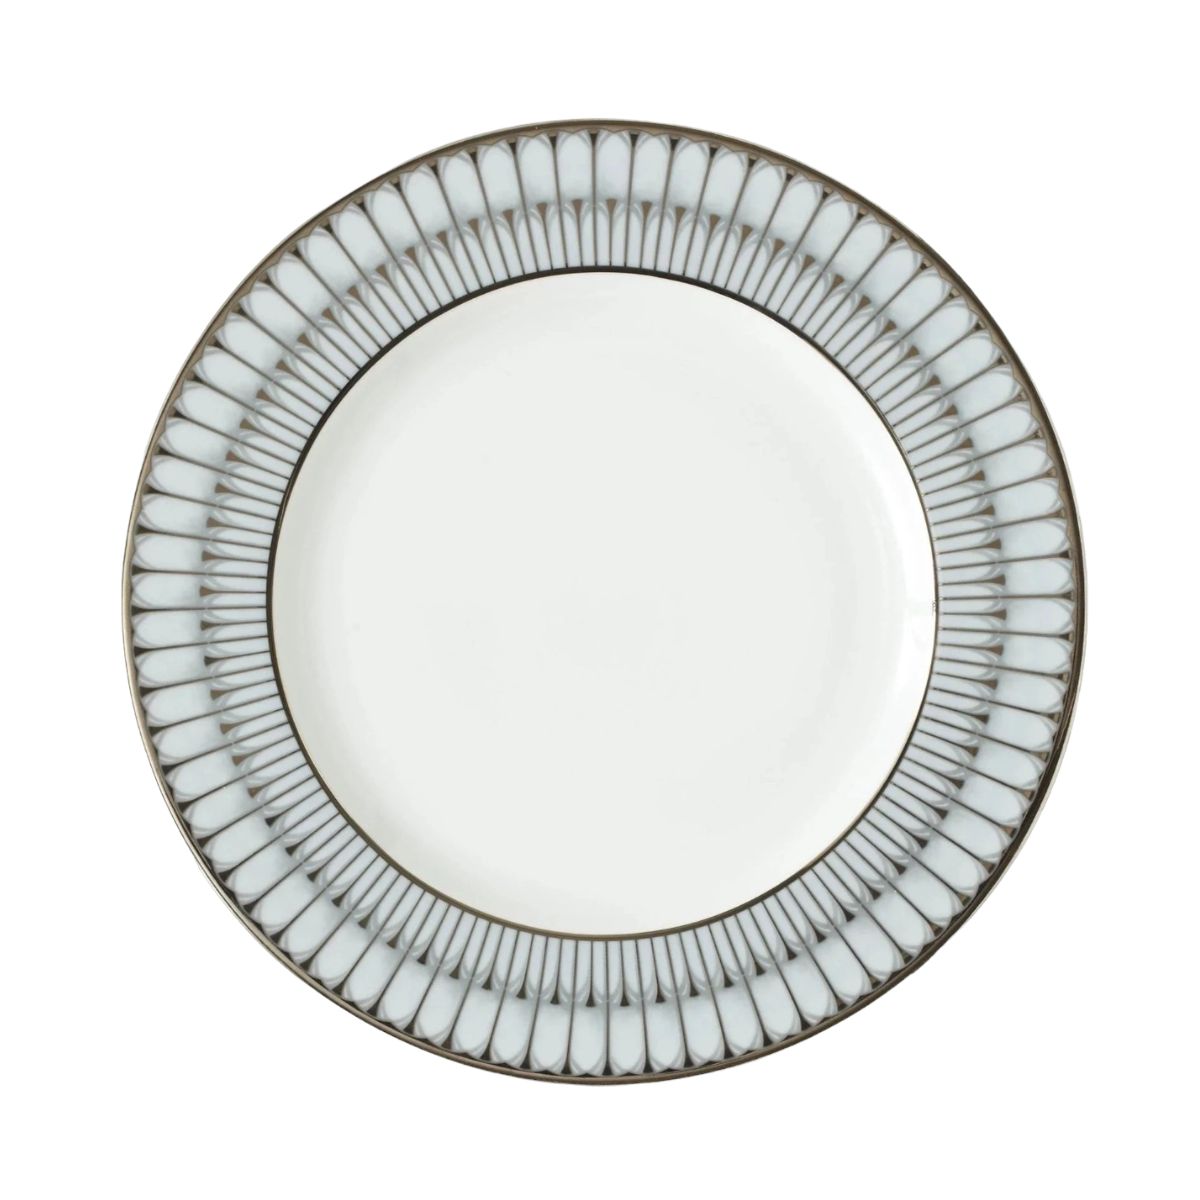 Deshoulieres Arcades Grey & Platinum Dinner Plate-Bespoke Designs